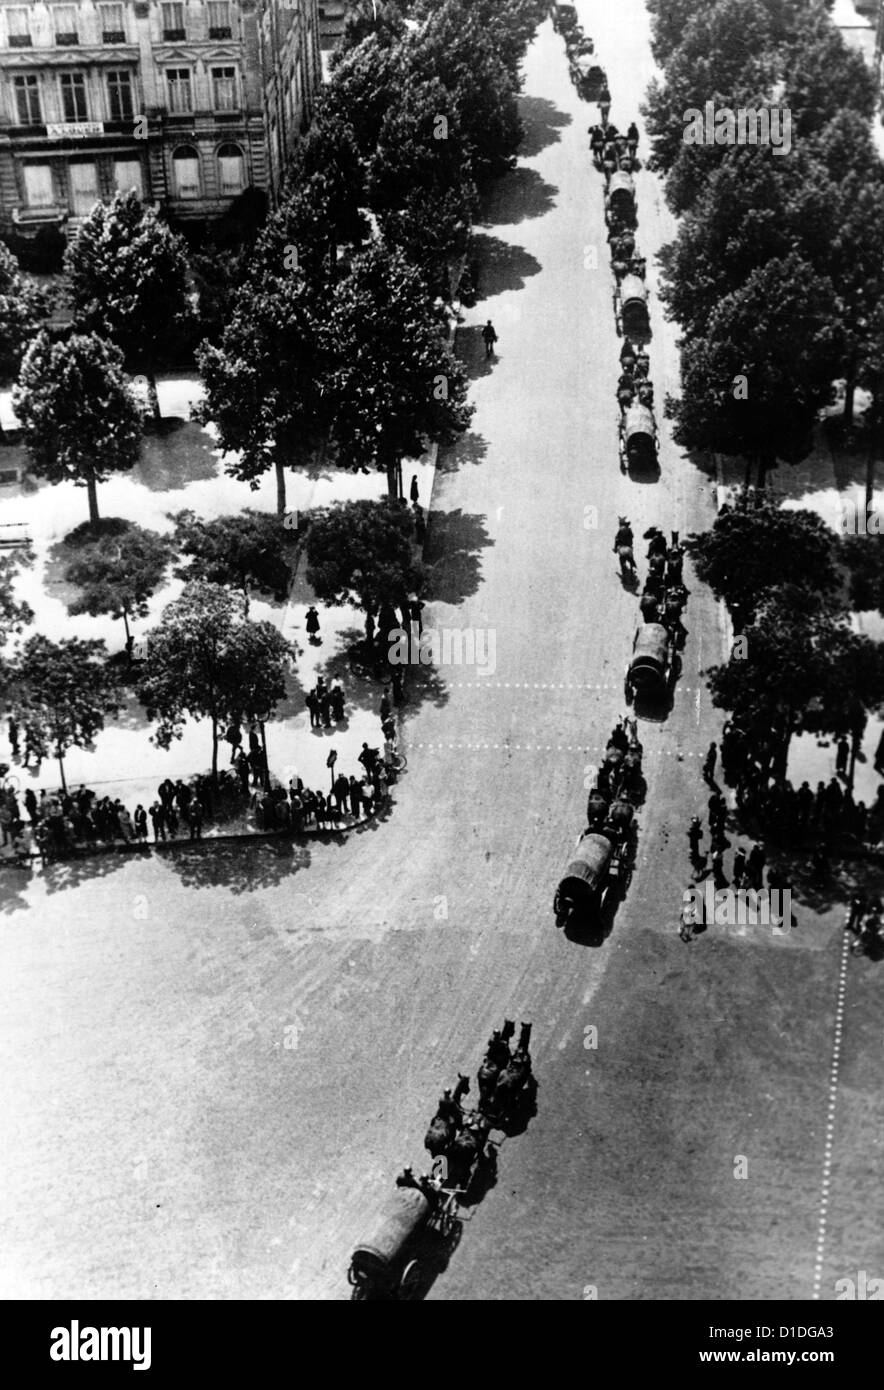 German soldiers march along the Arc de Triomphe on Place de l'Etoile (today: Place Charles de Gaulle) during the German invasion of Paris in June 1940. Fotoarchiv für Zeitgeschichte Stock Photo